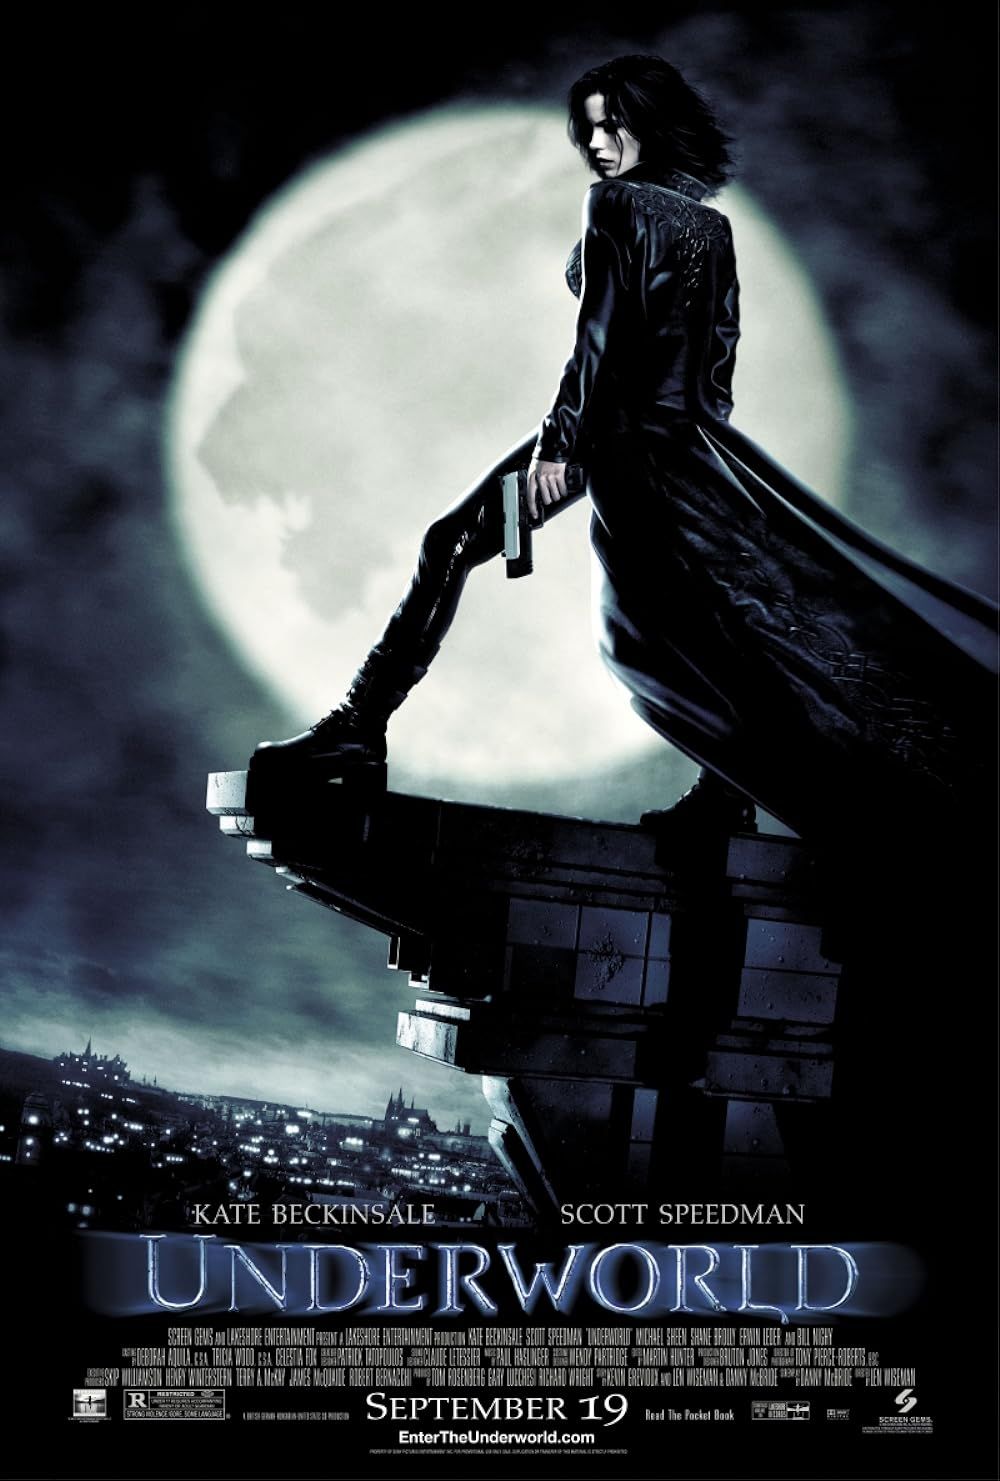 Underworld 2003 movie starring Kate Beckinsale